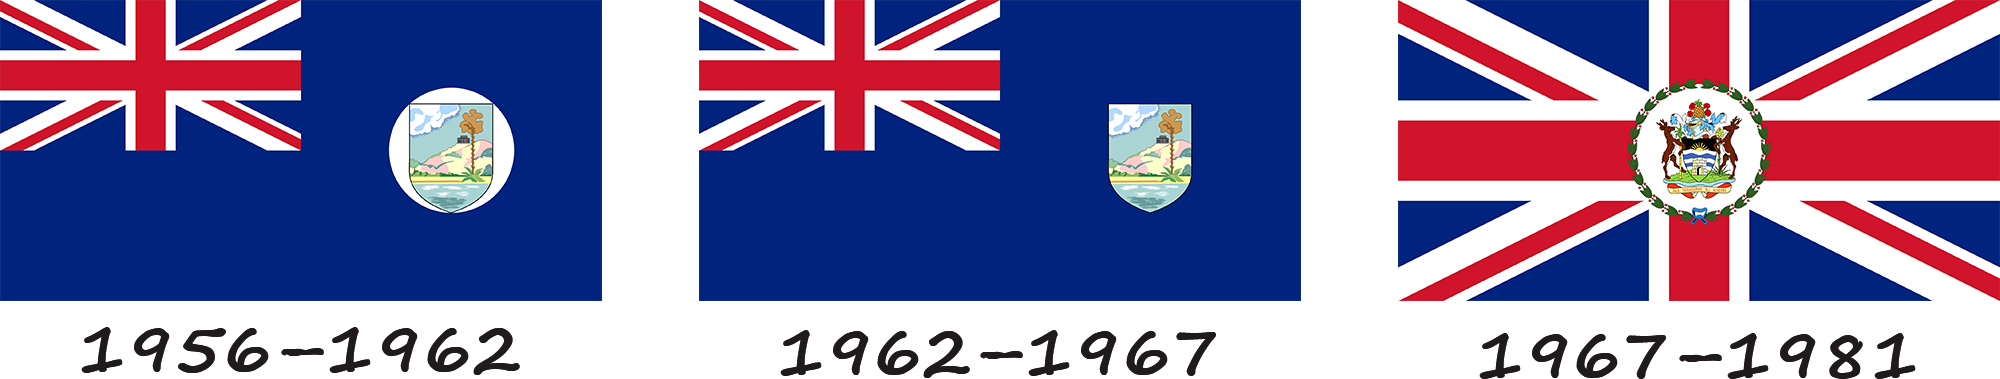 Historia de la bandera de Antigua y Barbuda